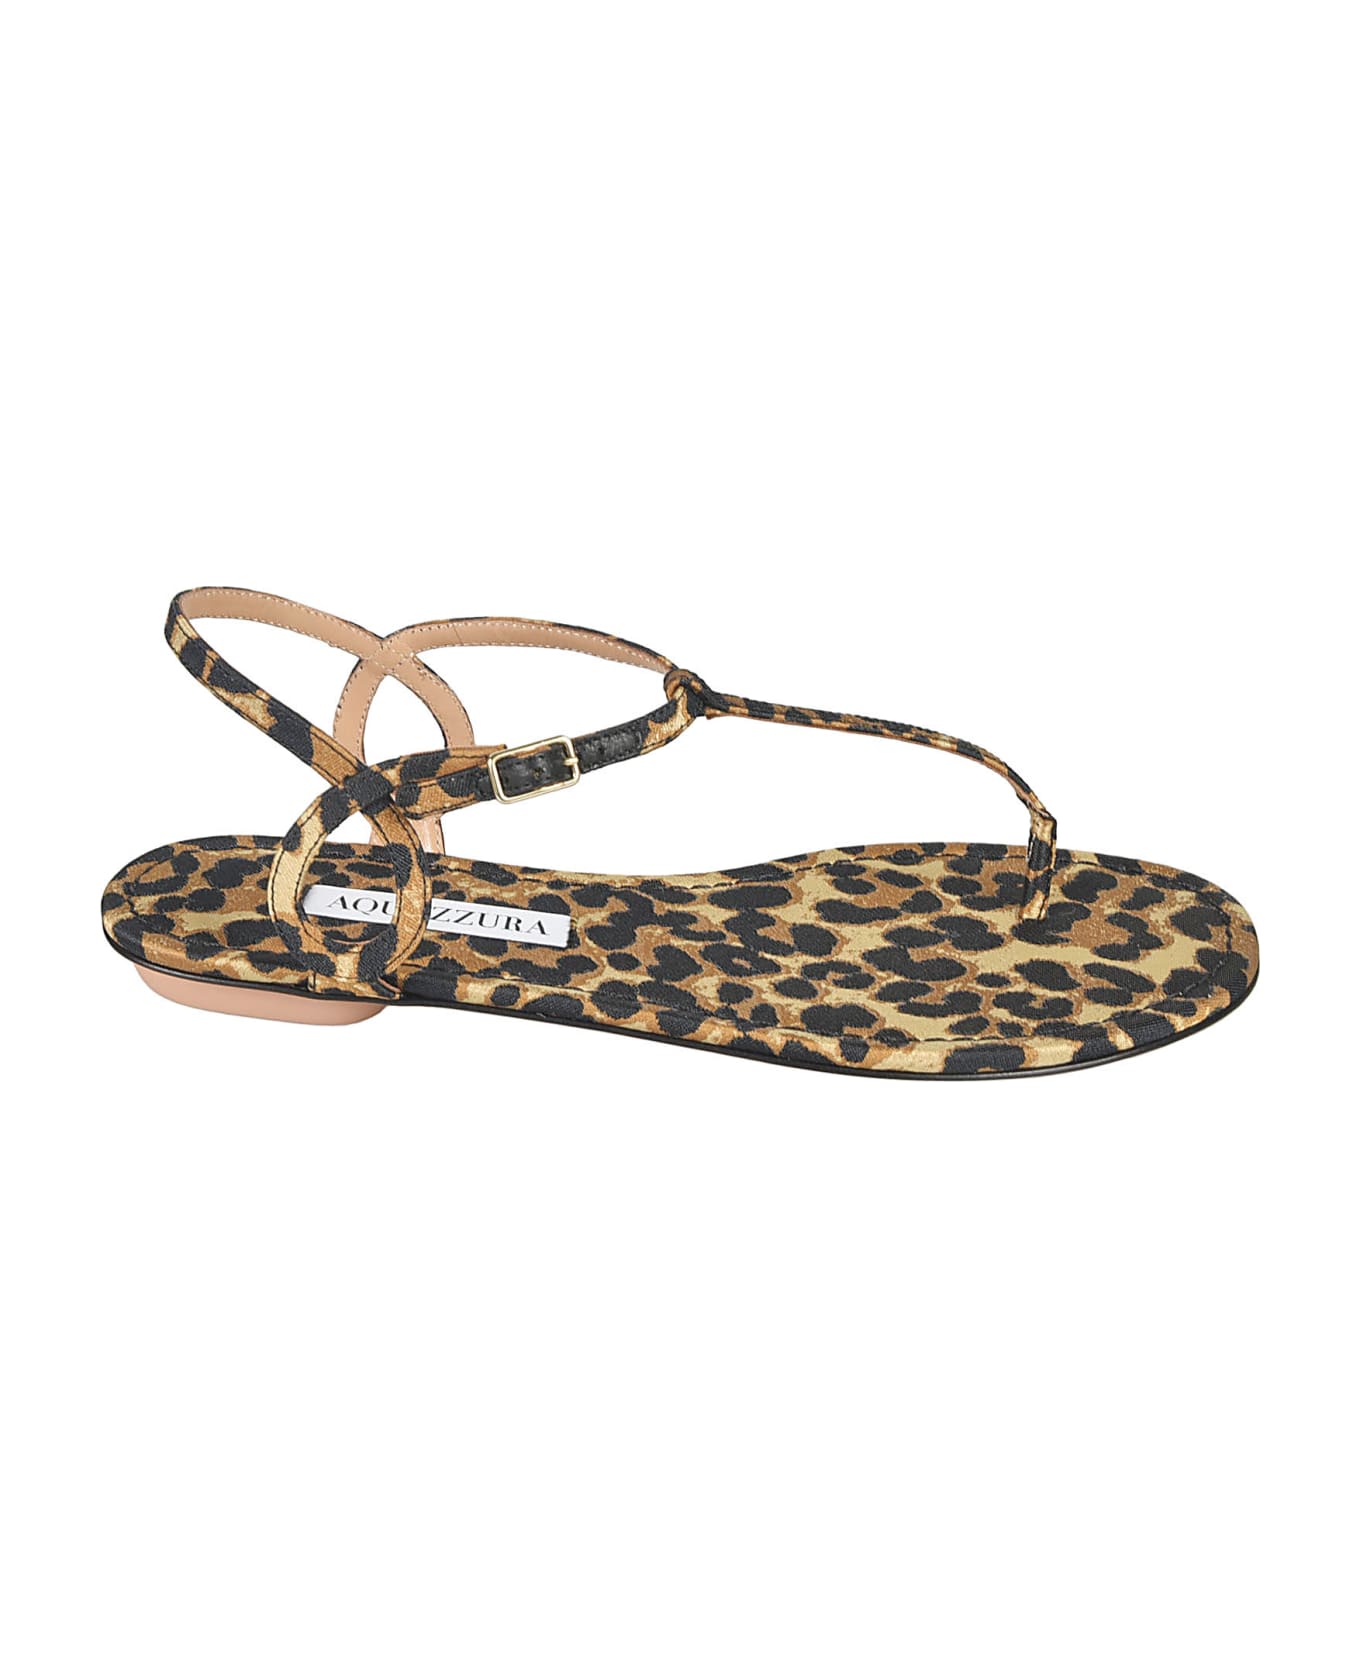 Aquazzura Leopard Bare Flat Sandals - Caramel